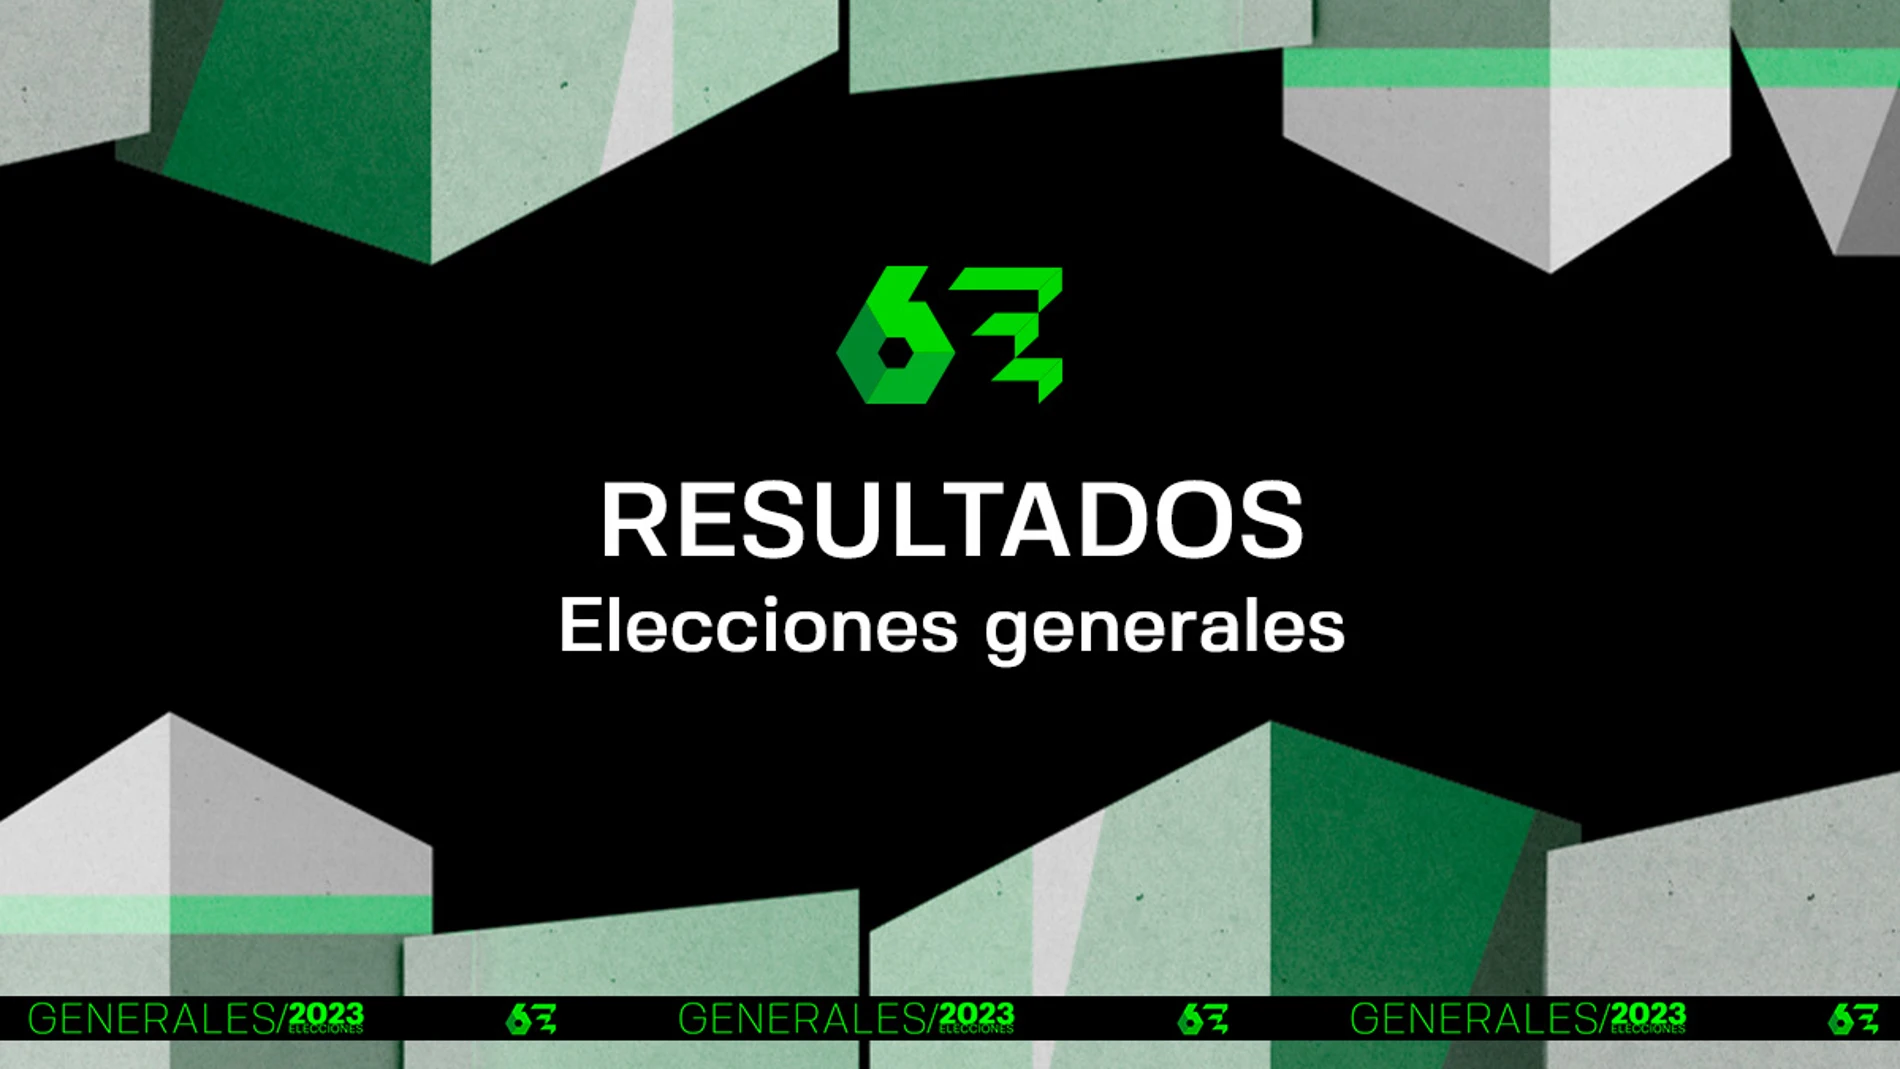 Sigue los resultados de las elecciones generales de 2023 (23J), en laSexta.com